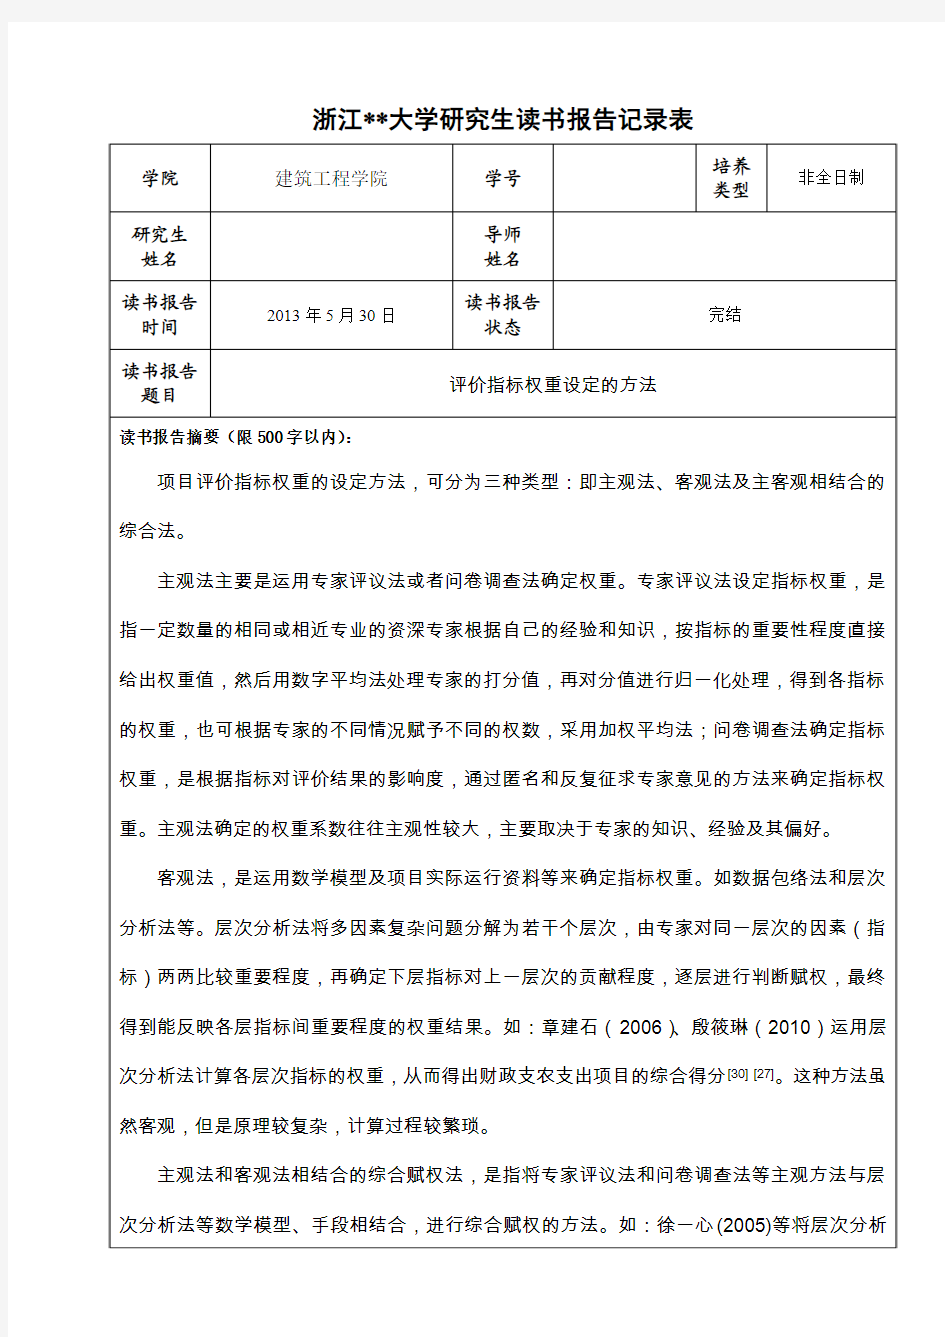 浙江大学读书报告记录表、4评价指标权重设定的方法